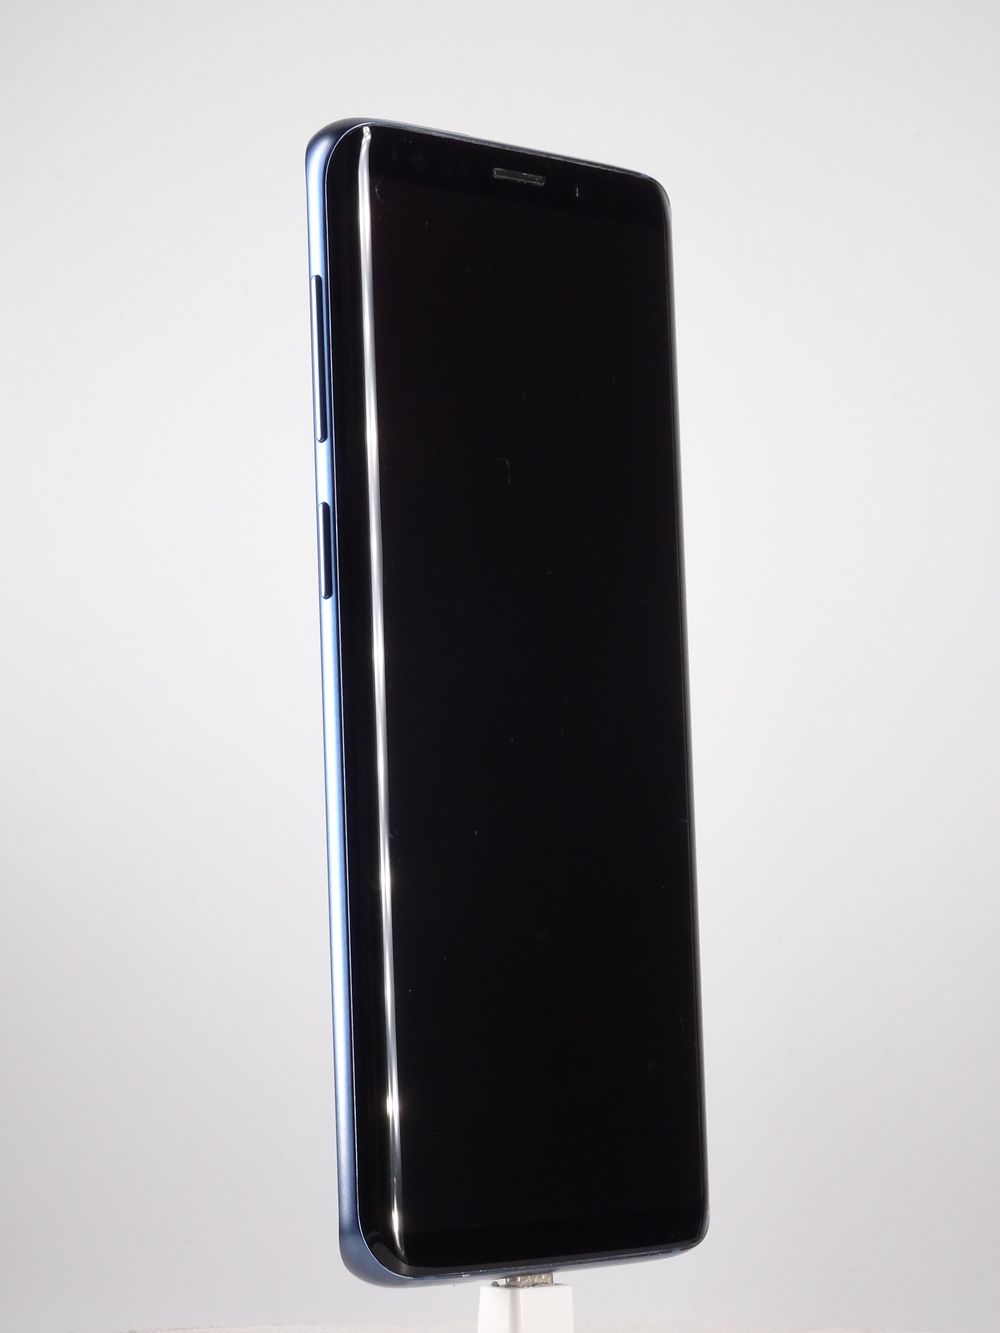 Мобилен телефон Samsung, Galaxy S9, 128 GB, Blue,  Като нов